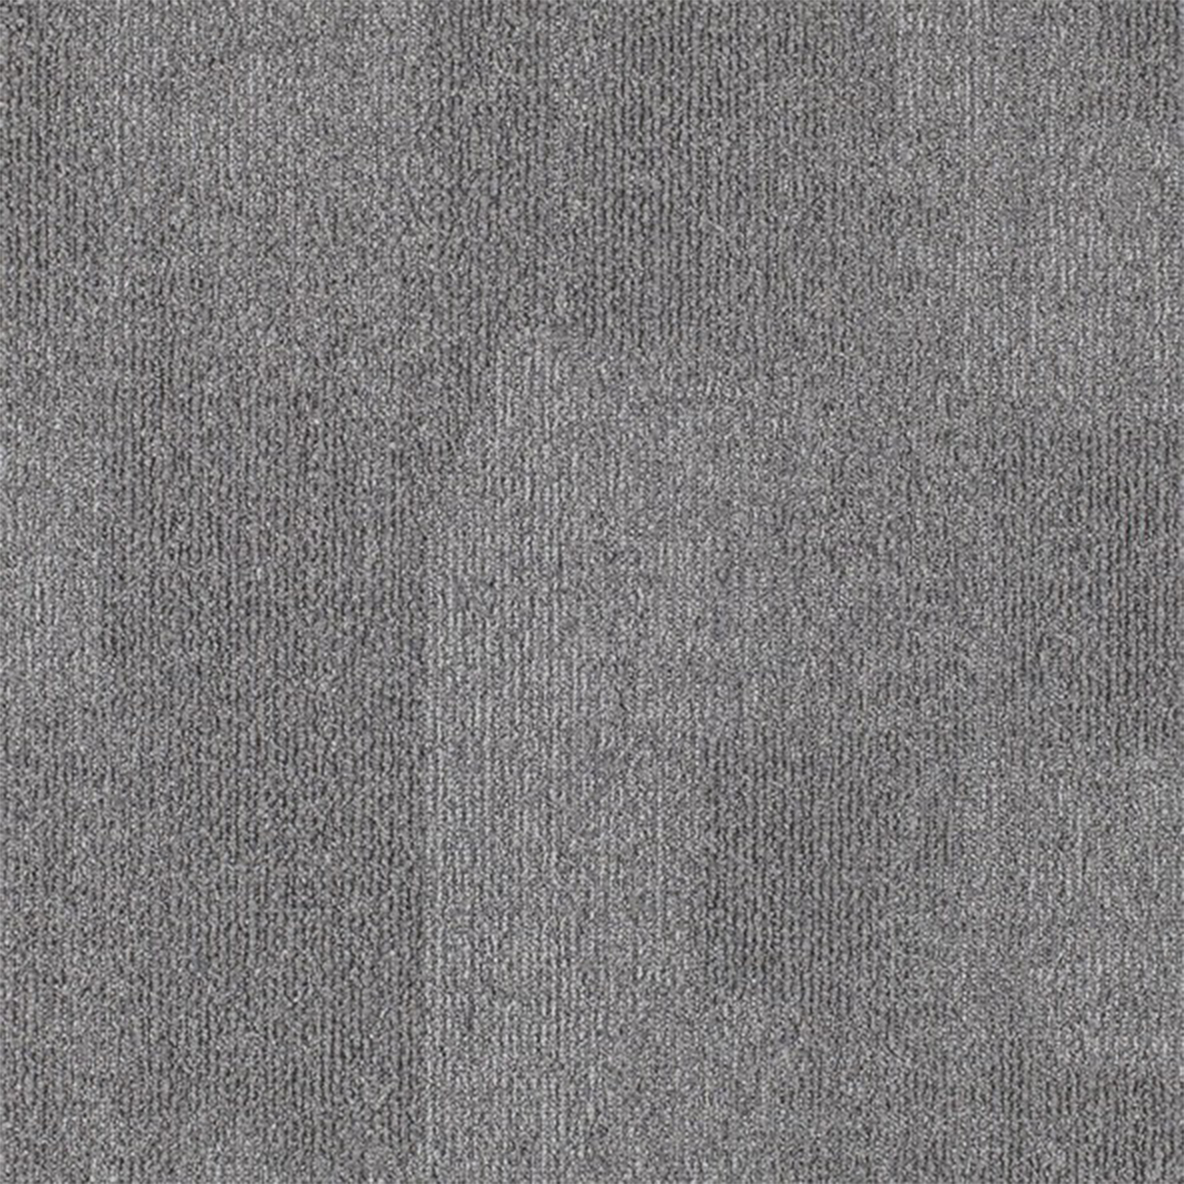 Replicate Commercial Carpet Tile .31 Inch x 50x50 cm per Tile Silverstone color close up